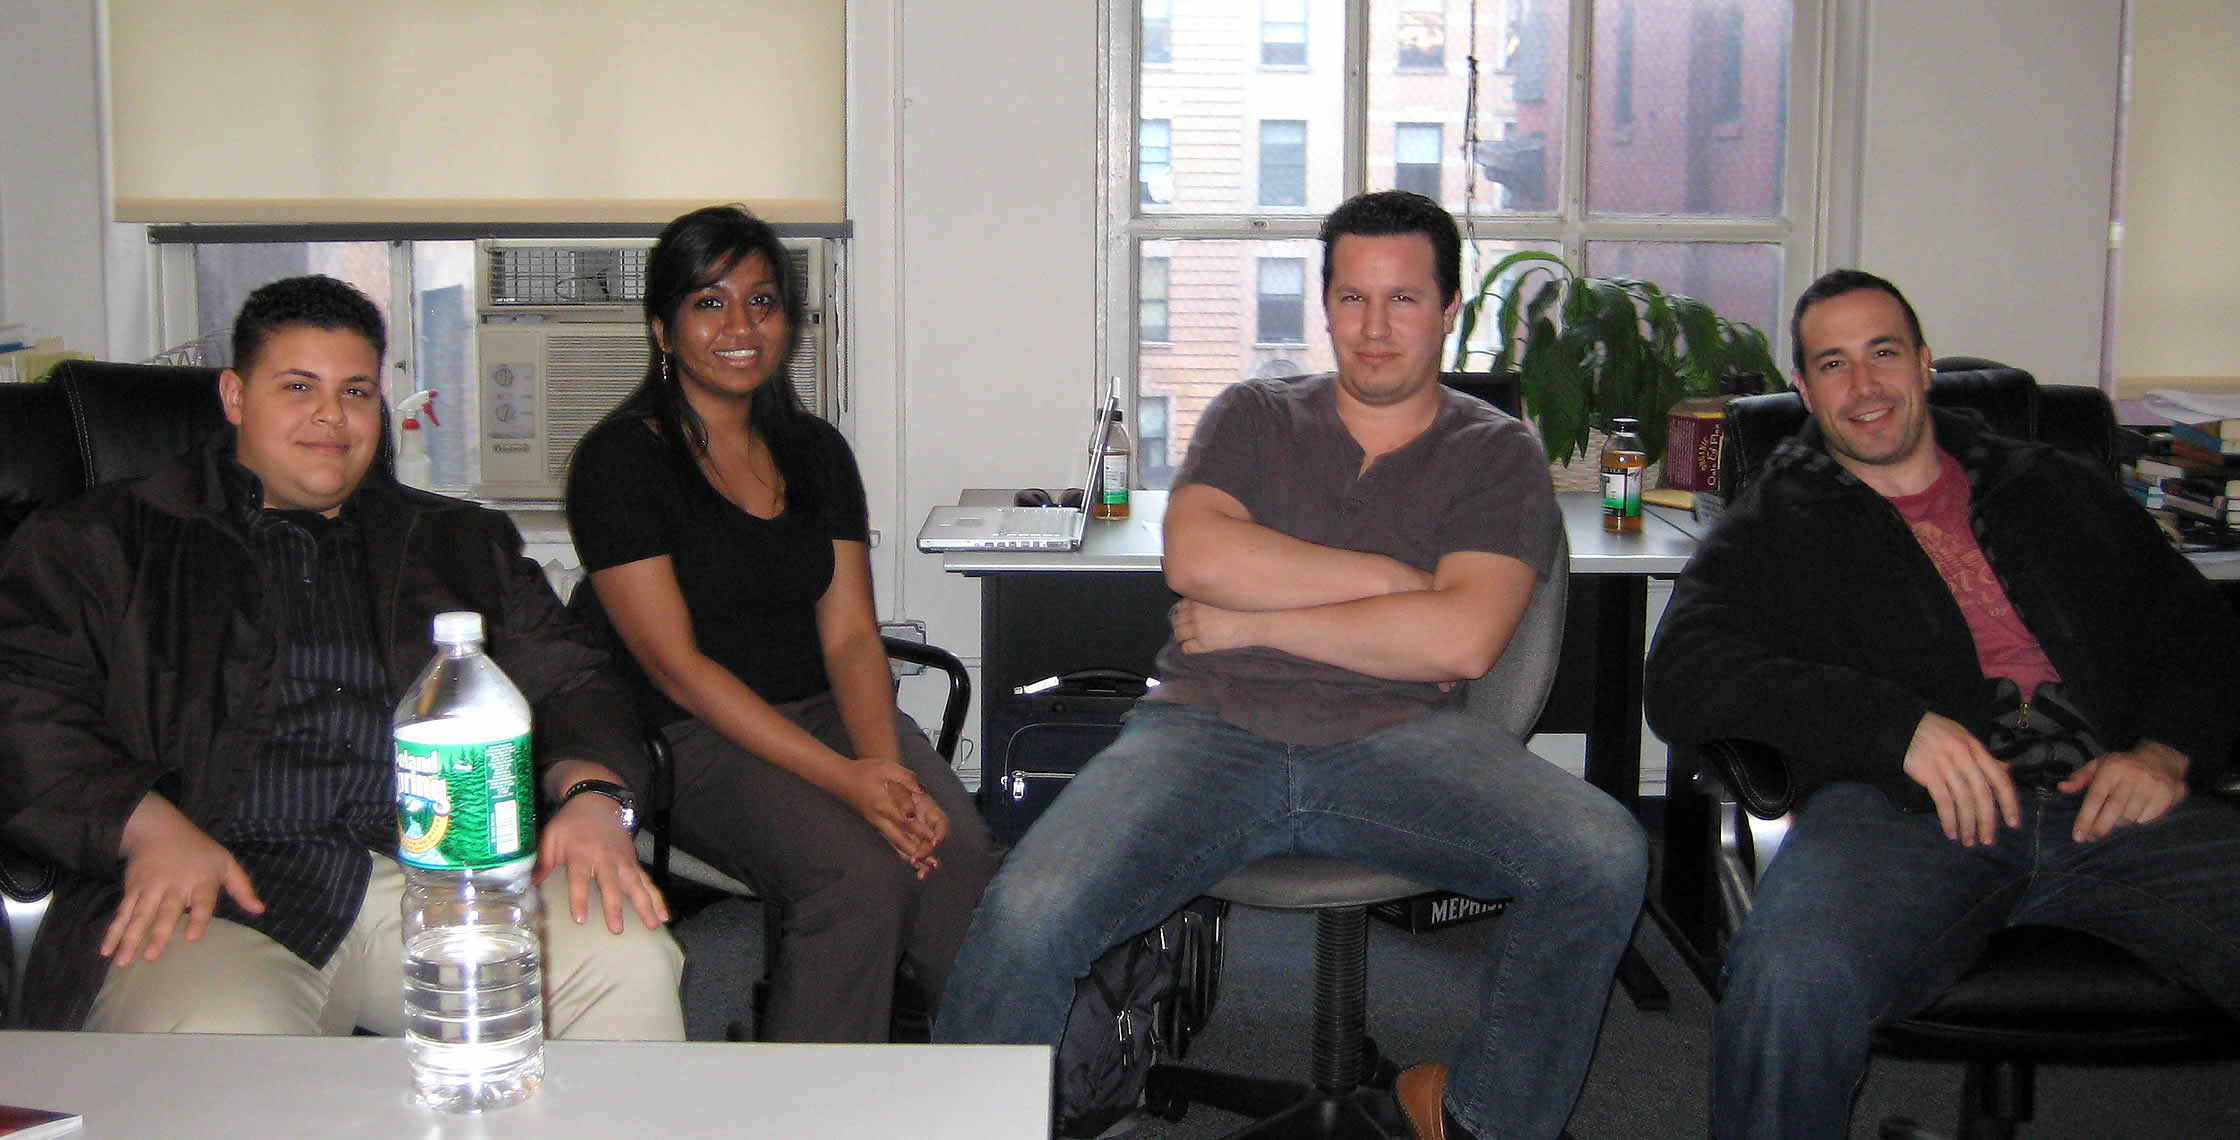 Ben Nadel at the New York ColdFusion User Group (Apr. 2008) with: Clark Valberg, Nafisa Sabu, and Rob Gonda